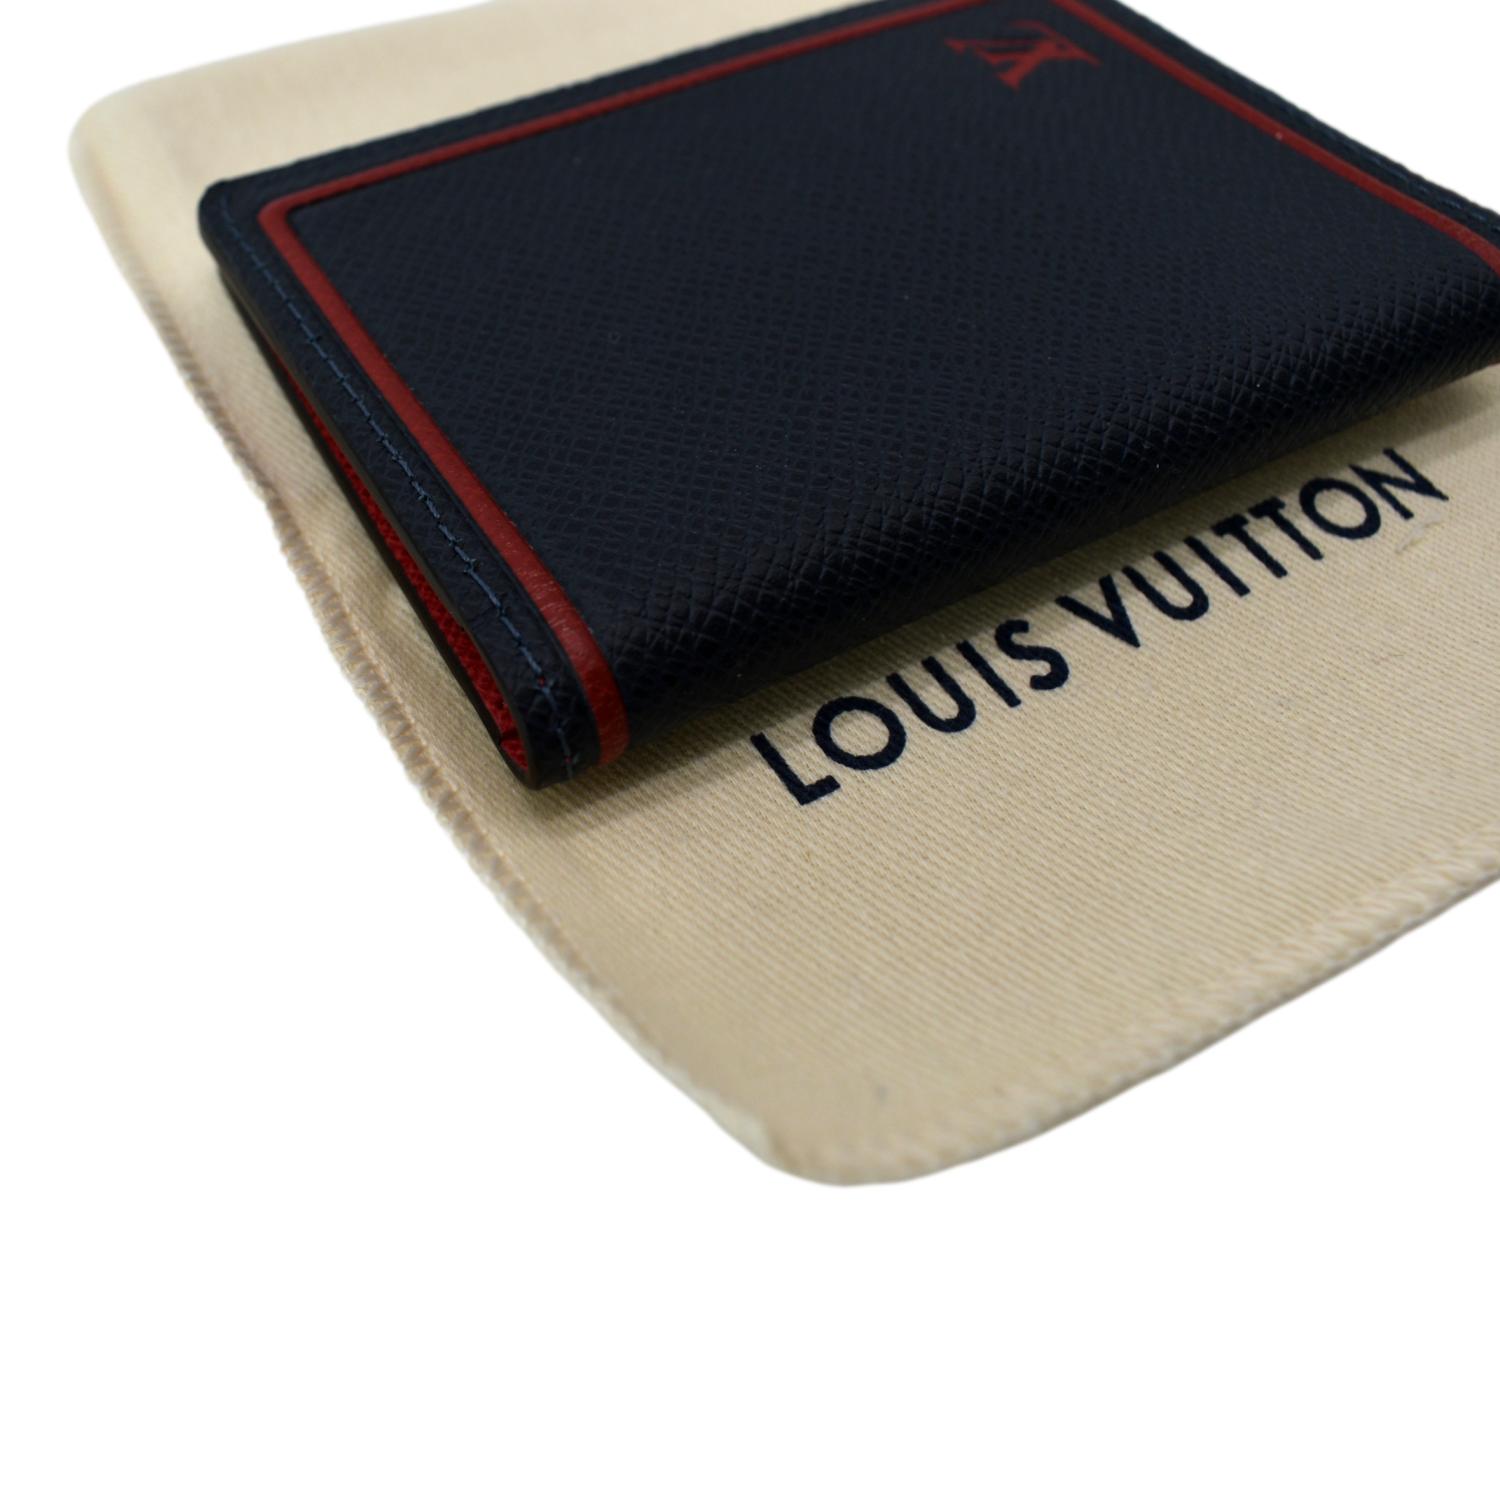 DDH - louis vuitton organizer pouch in black taiga leather - Louis